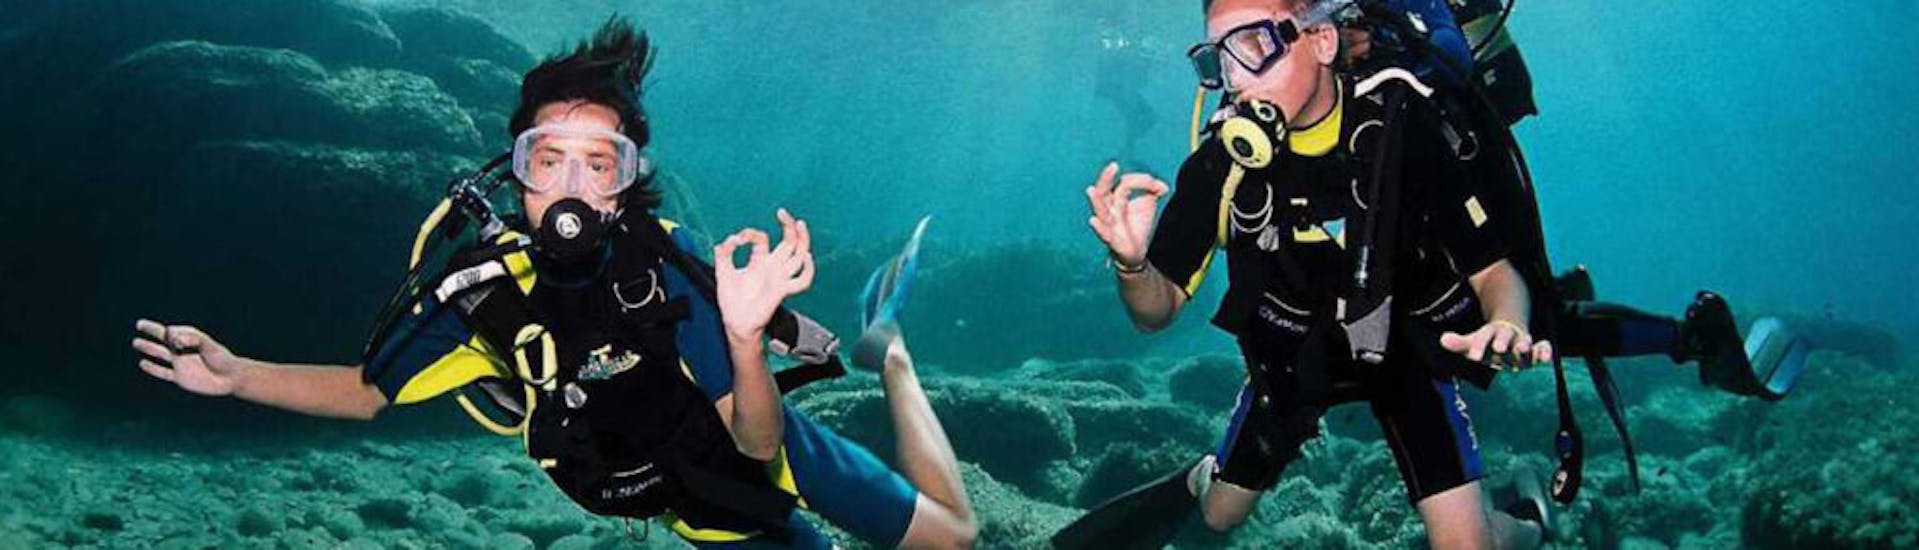 Bild von zwei Tauchern, die unter Wasser Zeichensprache sprechen, während eines PADI Open Water Diver Kurses auf Ibiza mit Arenal Diving & Boat Trips Ibiza.